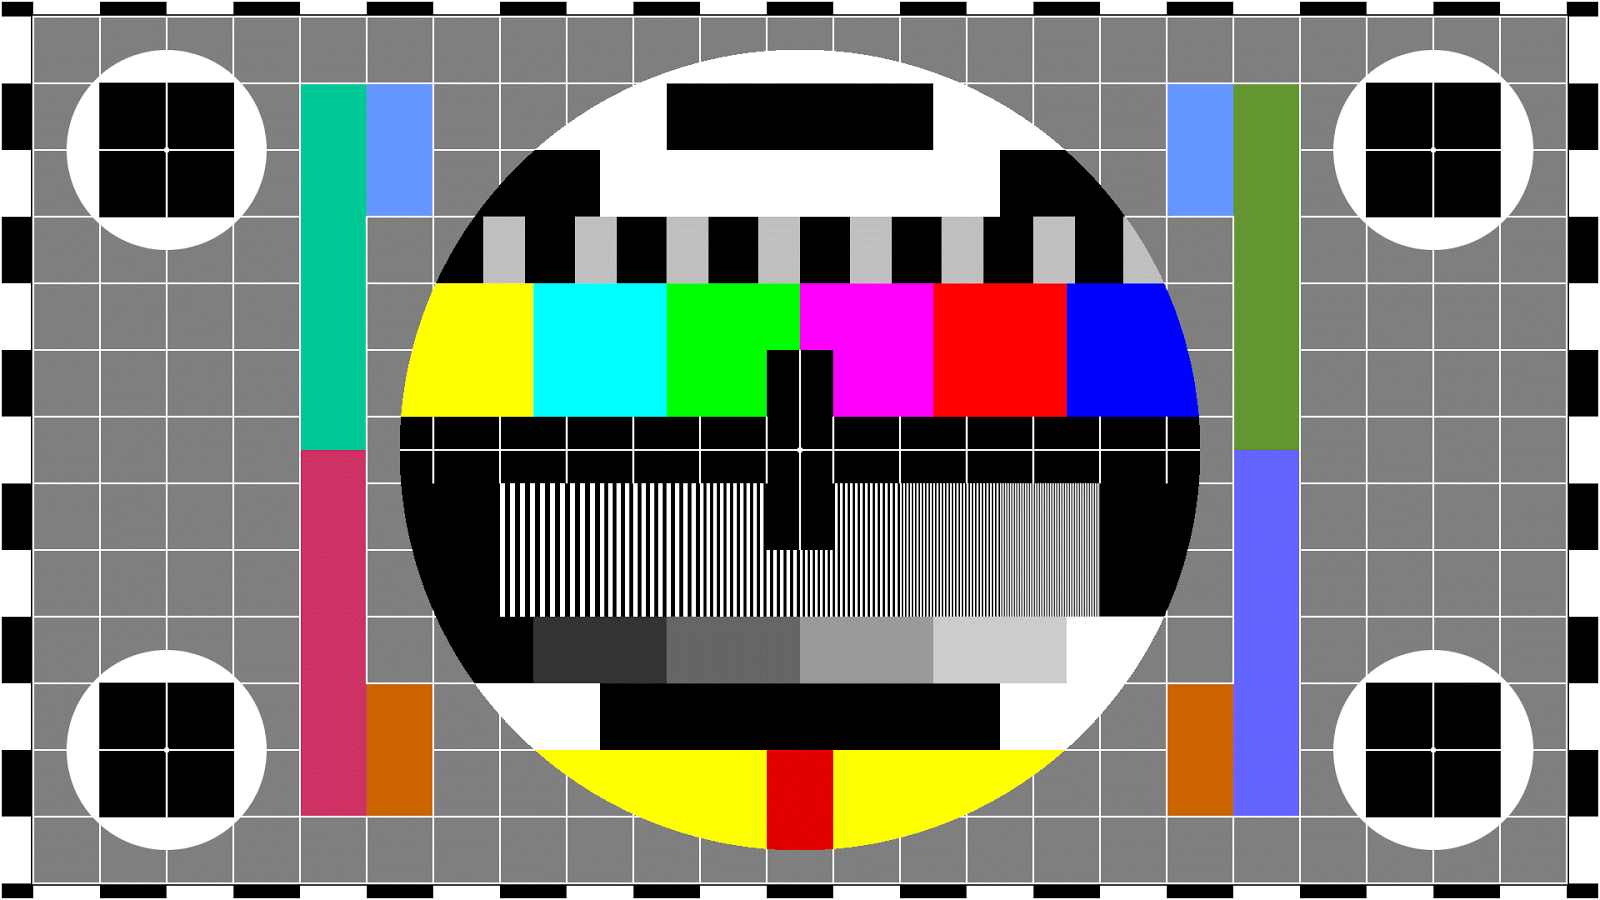 SMPTE color bars - Wikipedia